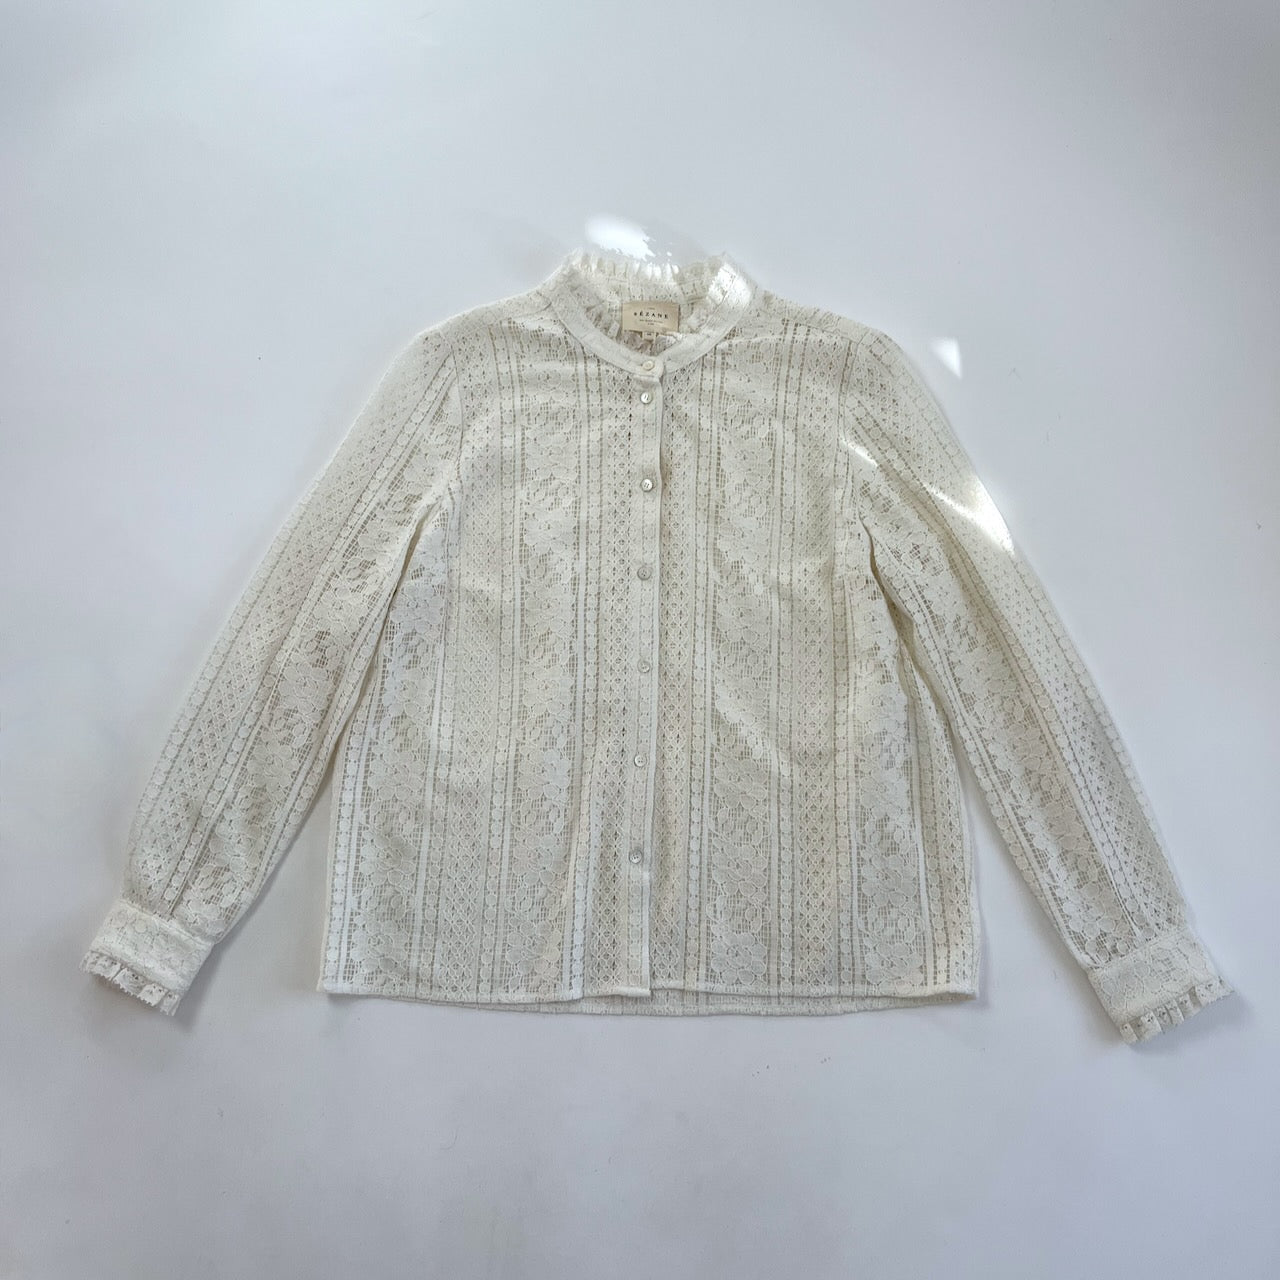 Sezane 'Cuzco' white lace shirt